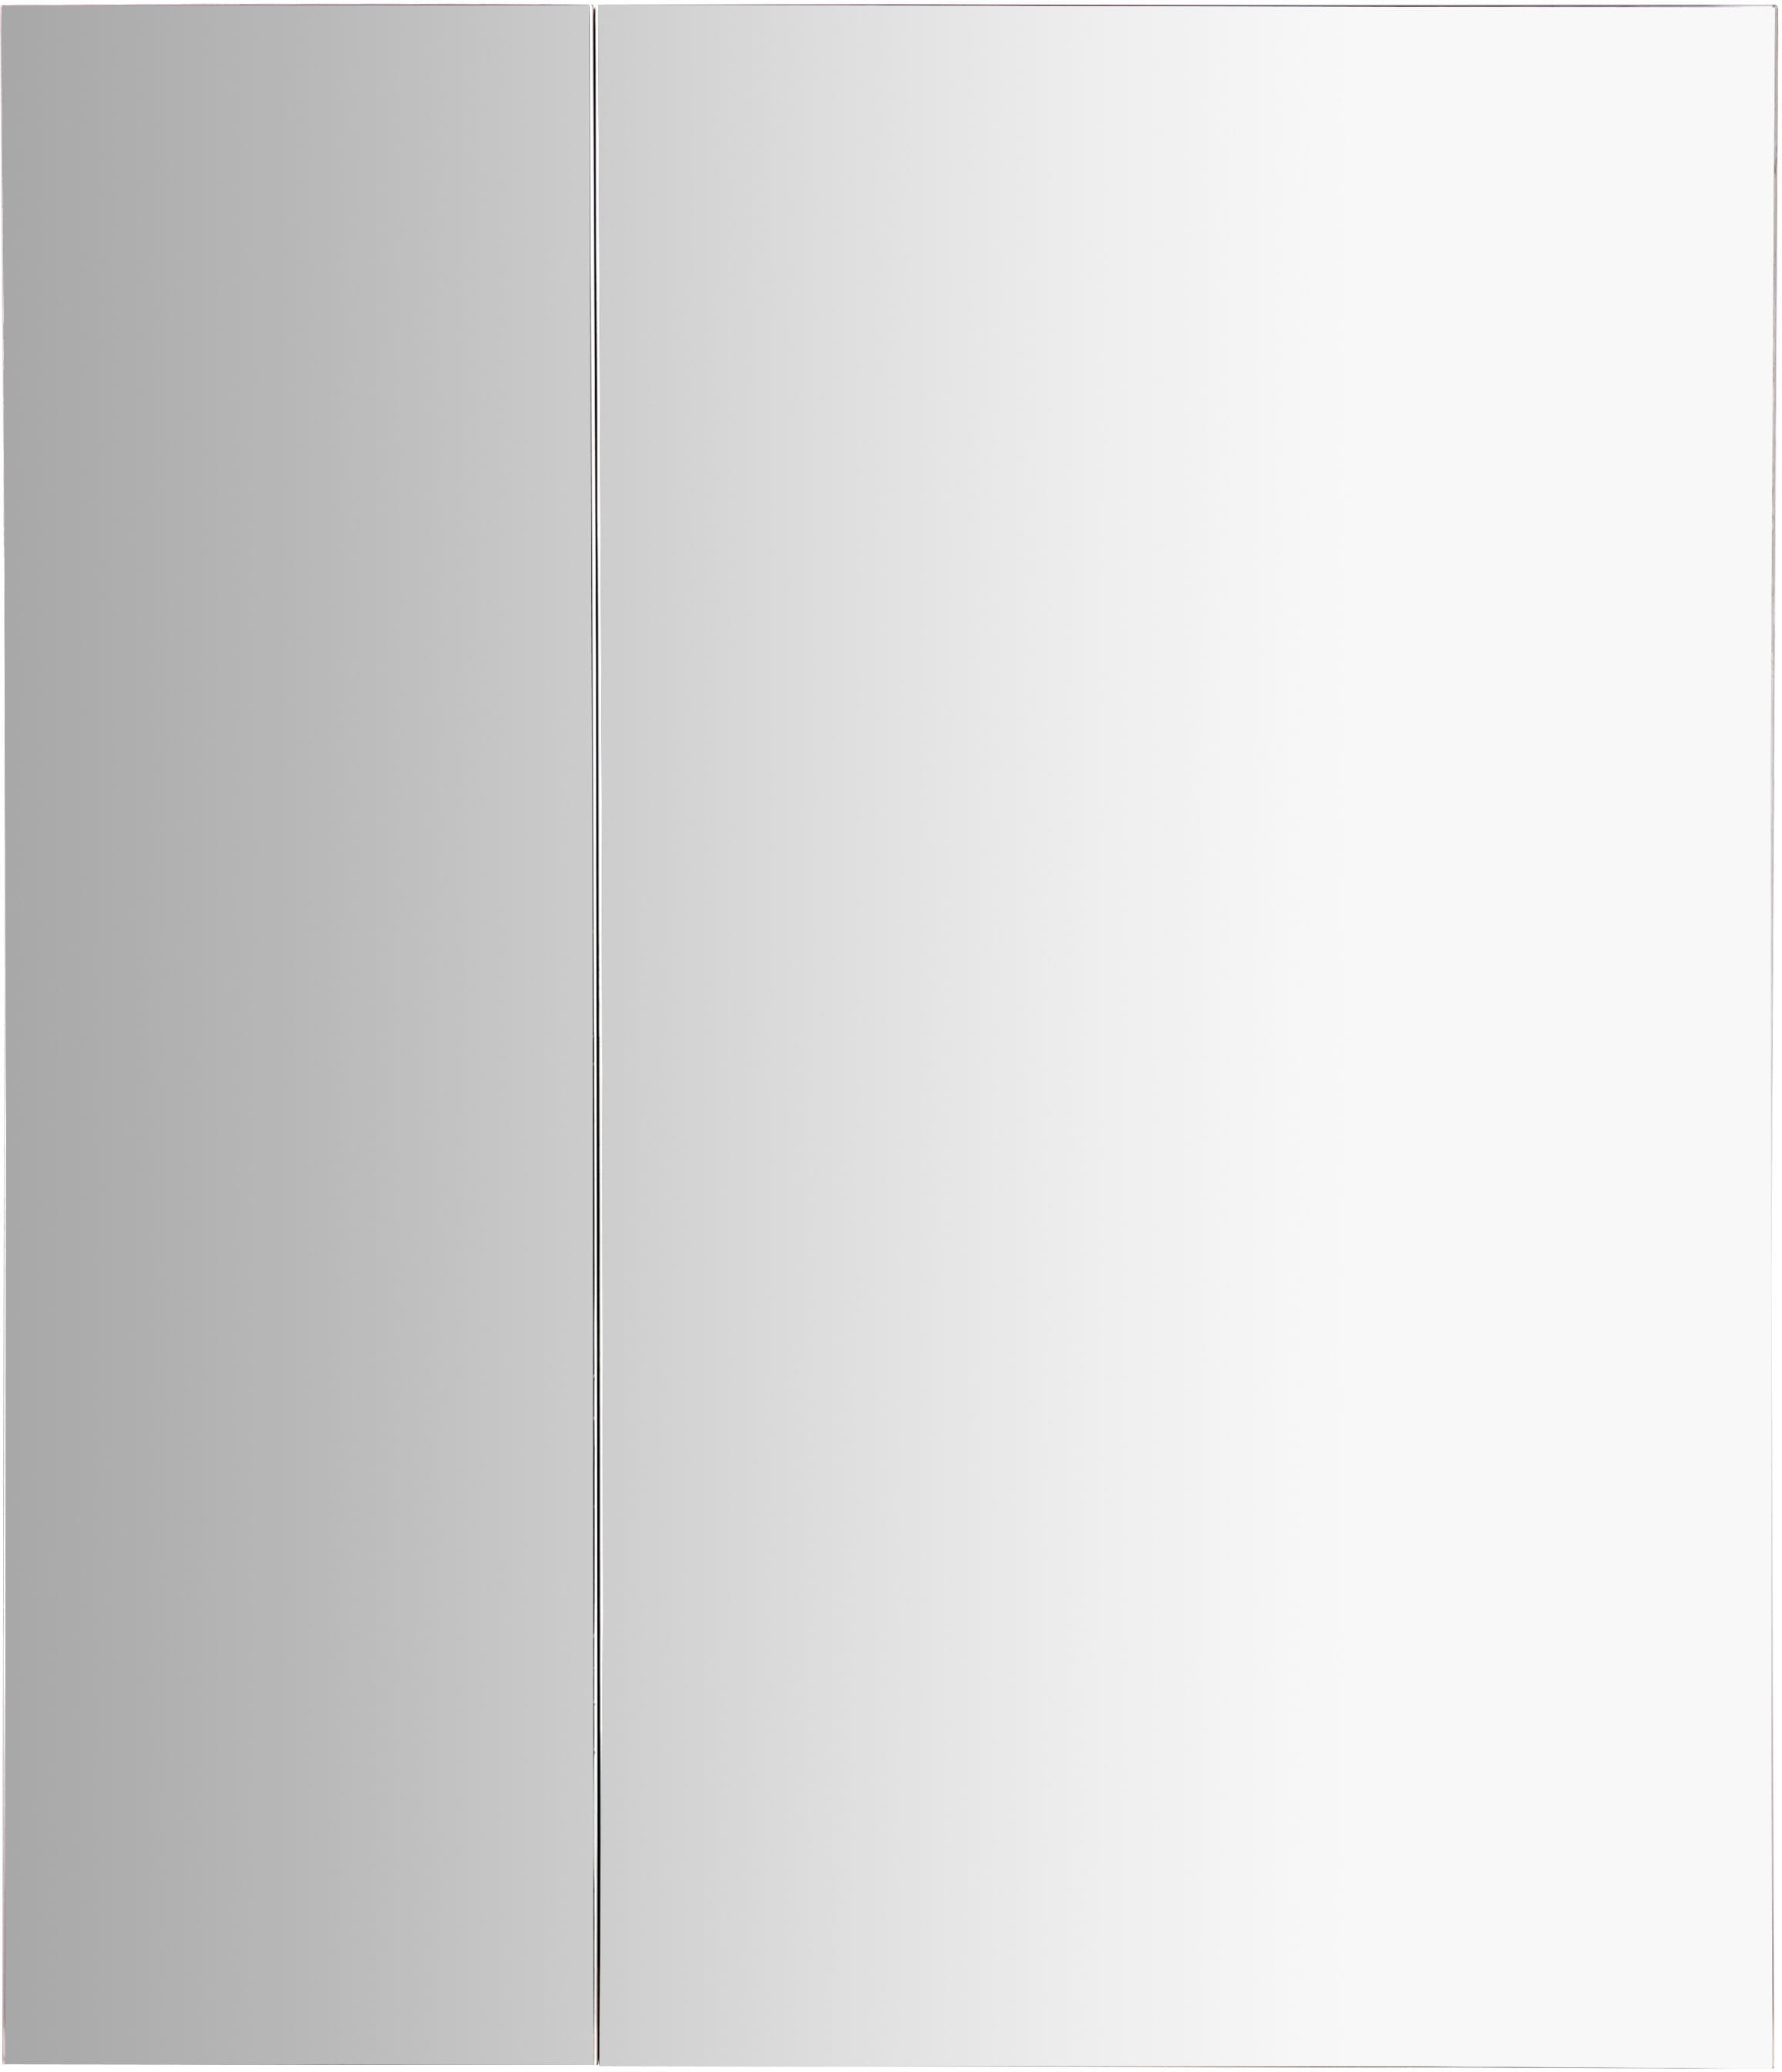 andas Spiegelschrank »Lund Badschrank Schrank Bad WC Spiegel ohne LED«, Badezimmerspiegelschrank Spiegel Badspiegel mit 2 Türen Breite 60cm